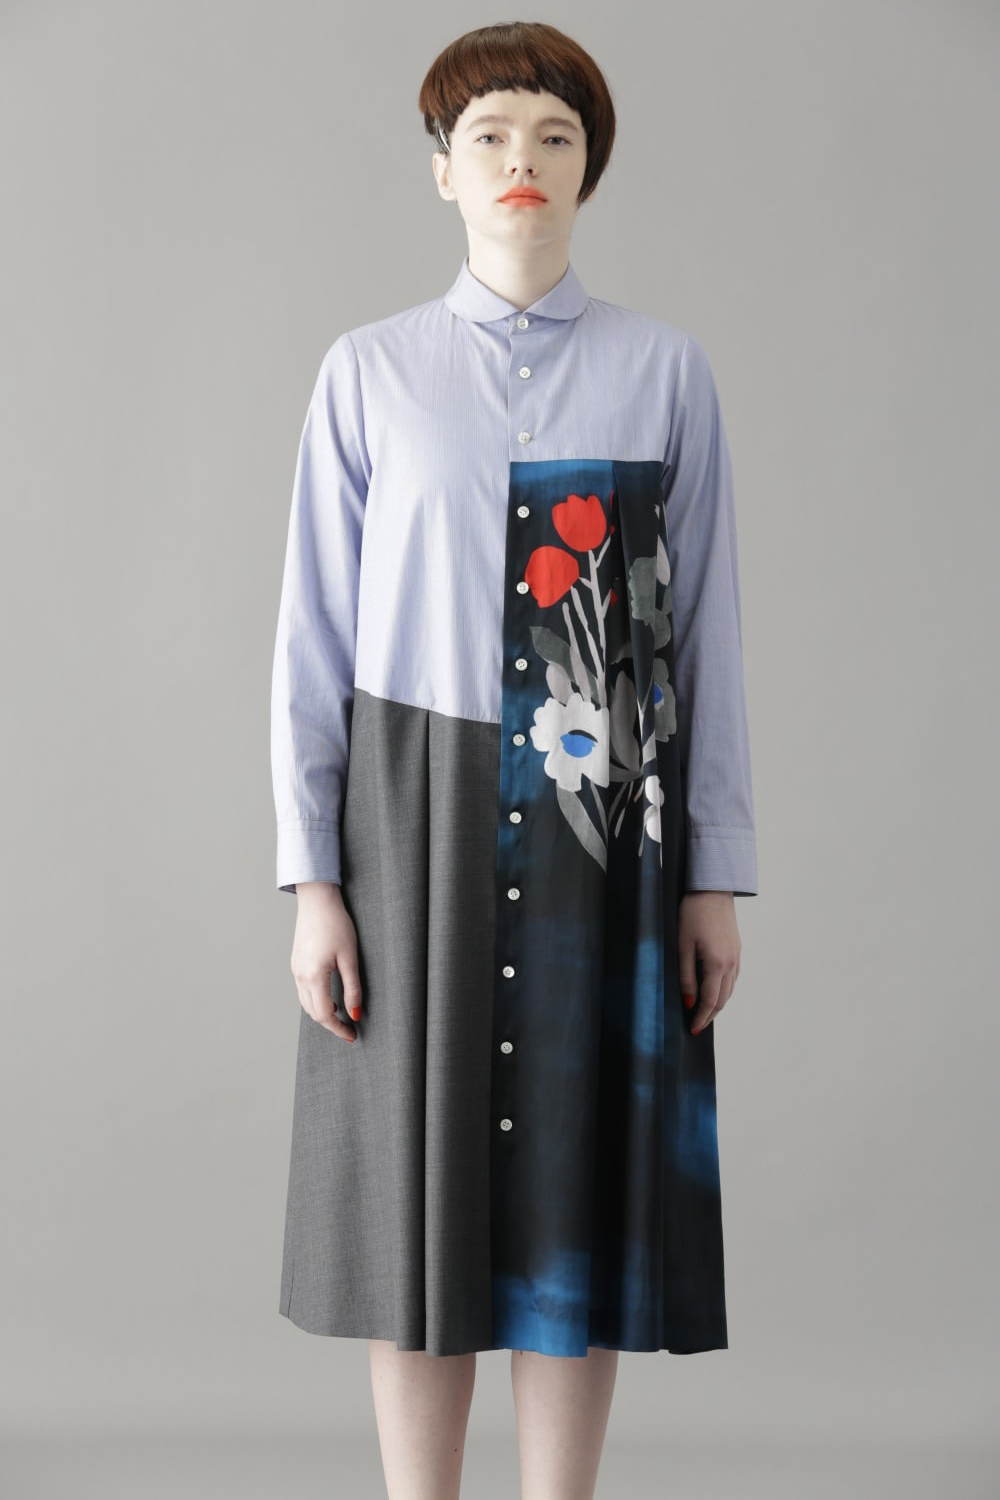 スナオクワハラ Sunaokuwahara 21年秋冬ウィメンズコレクション ファッションプレス